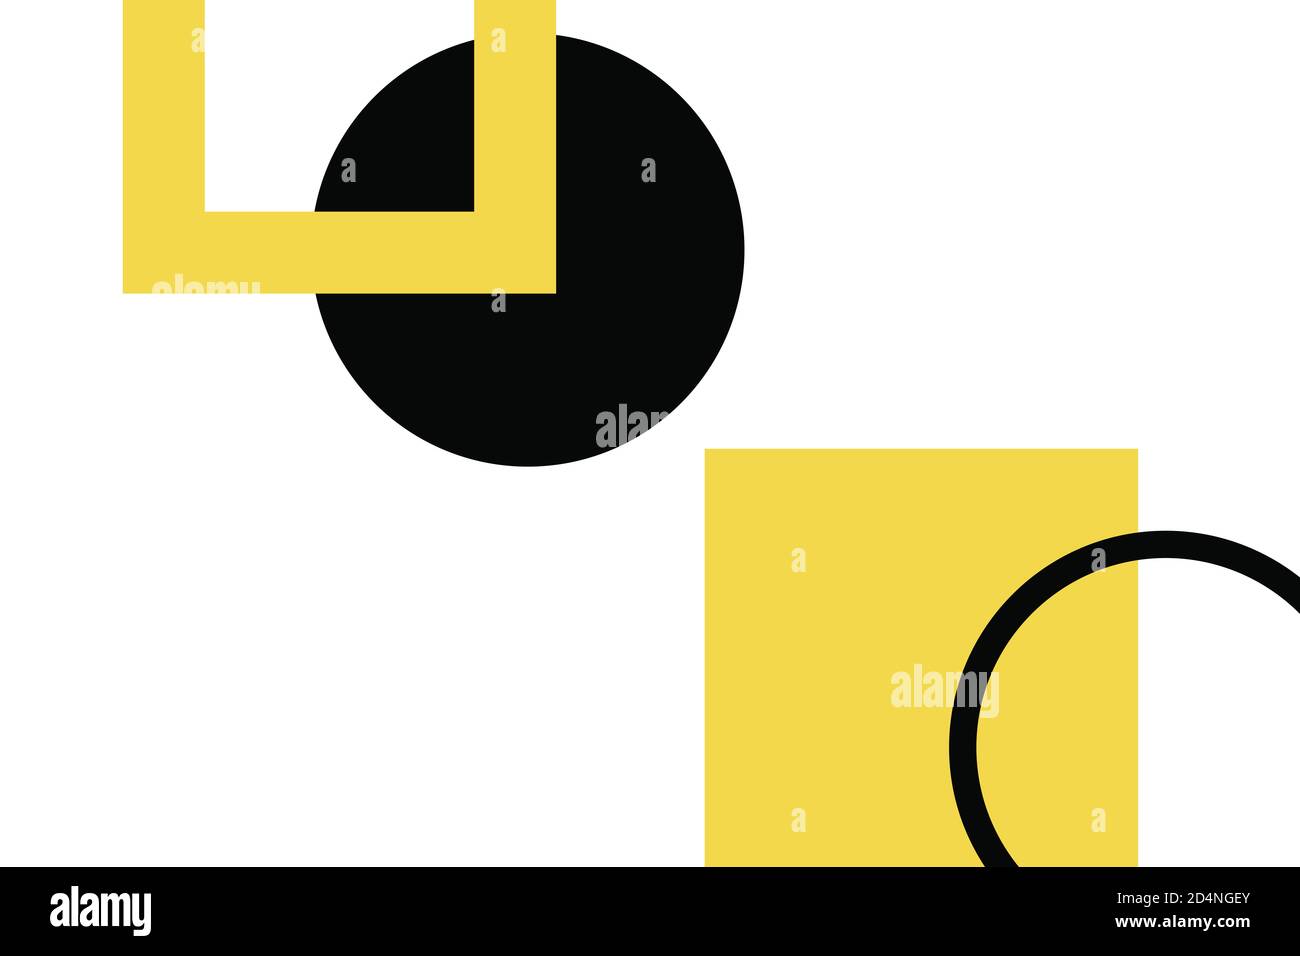 Arrière-plan abstrait avec des formes géométriques simples. Art vectoriel moderne, simple et ludique dans les couleurs jaune et noir. Des cercles et des carrés sont utilisés. Banque D'Images